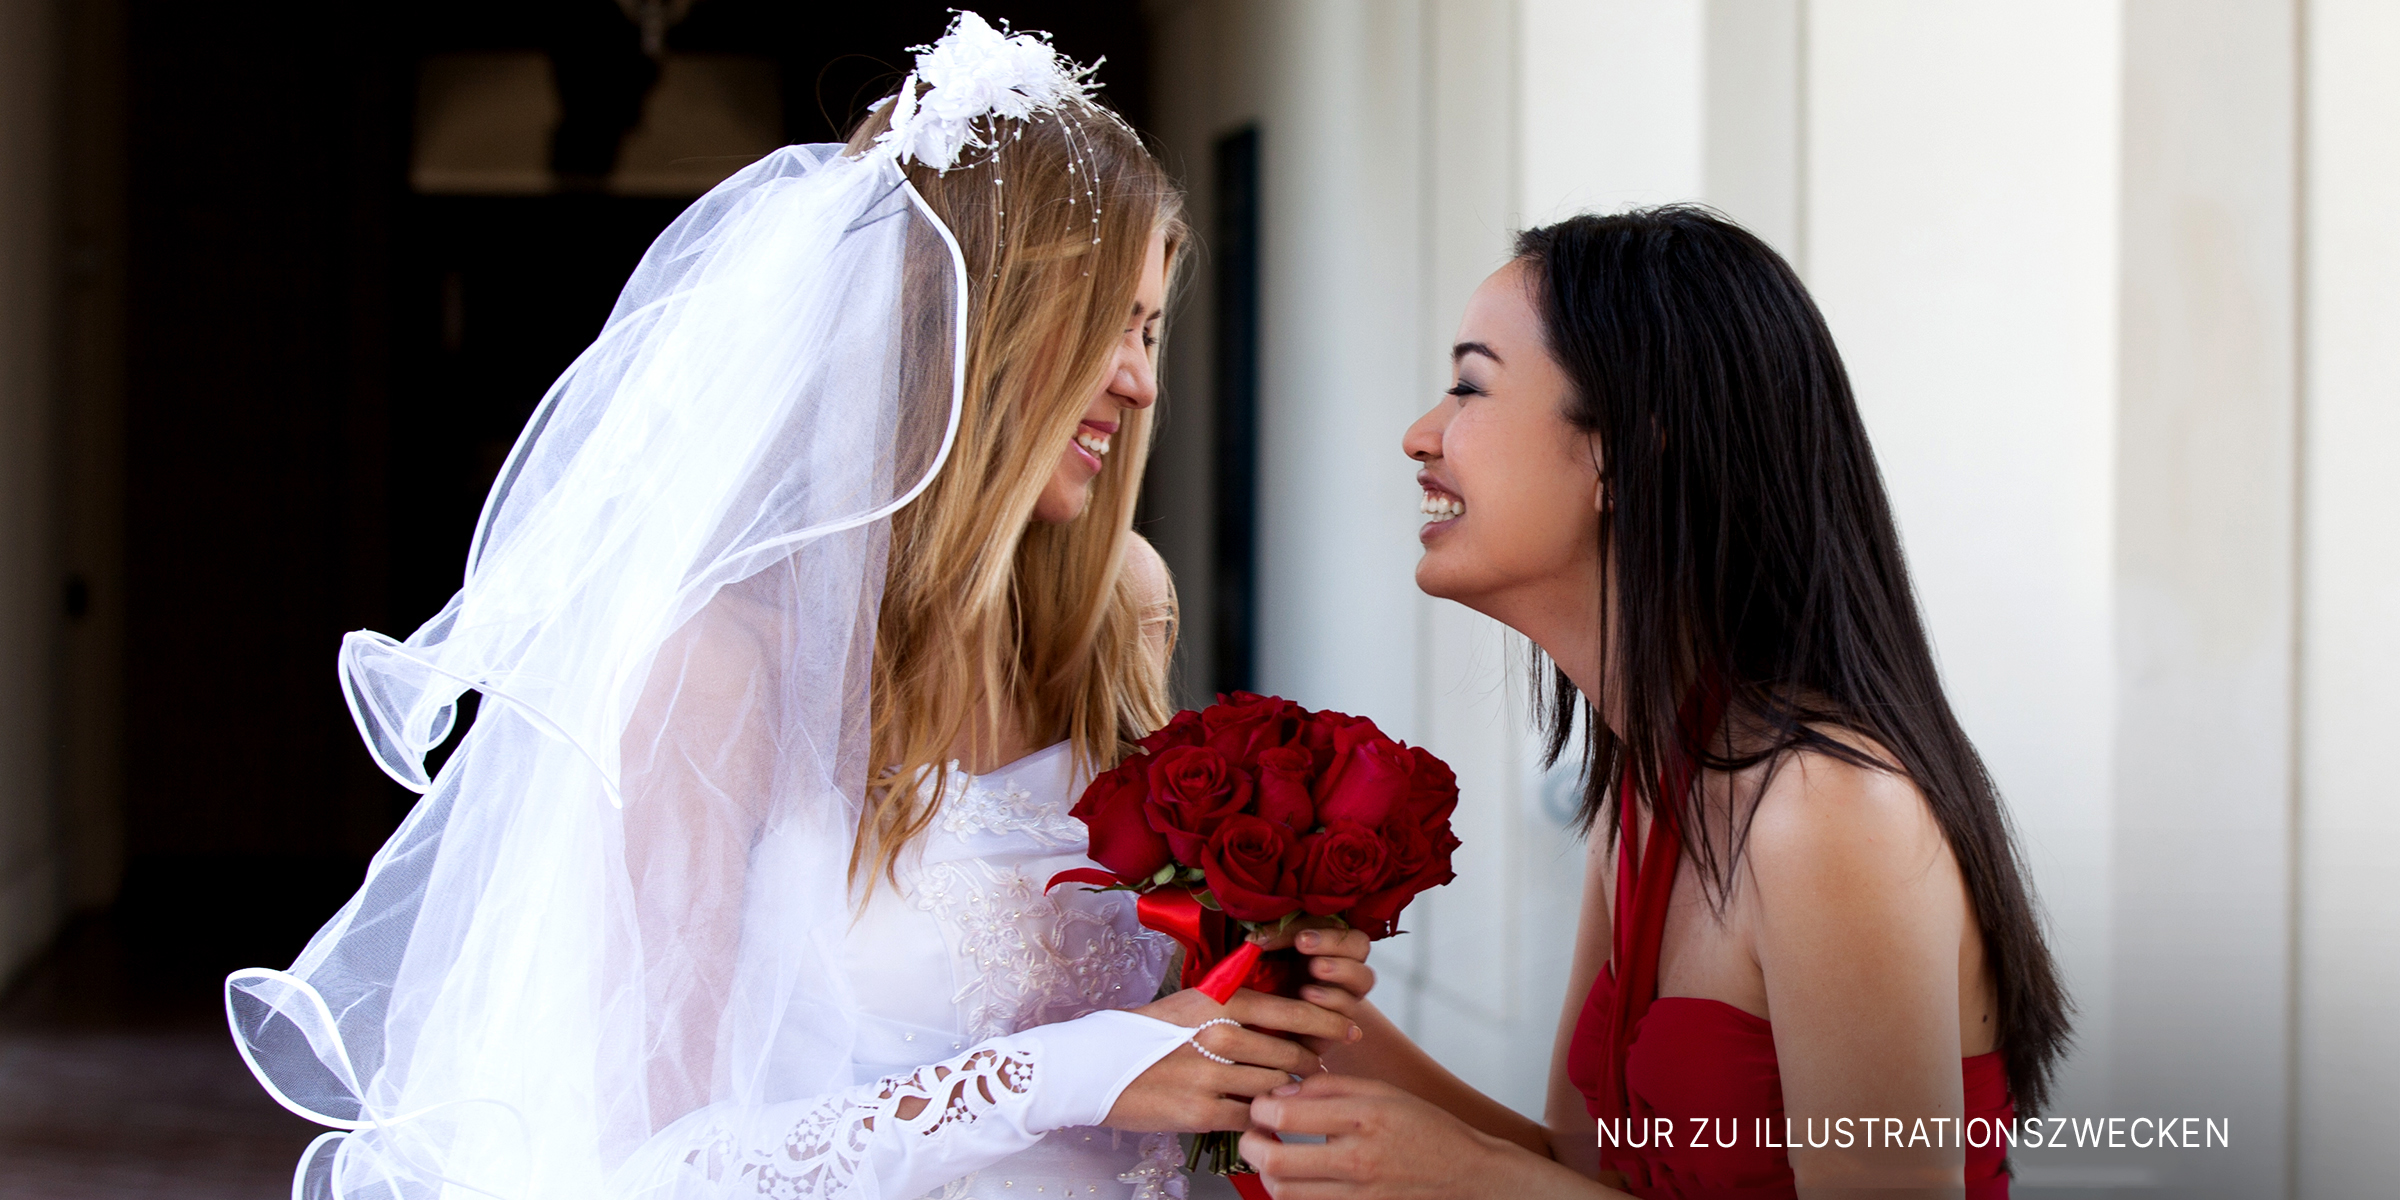 Eine lachende Braut und eine lachende Brautjungfer | Quelle: Shutterstock